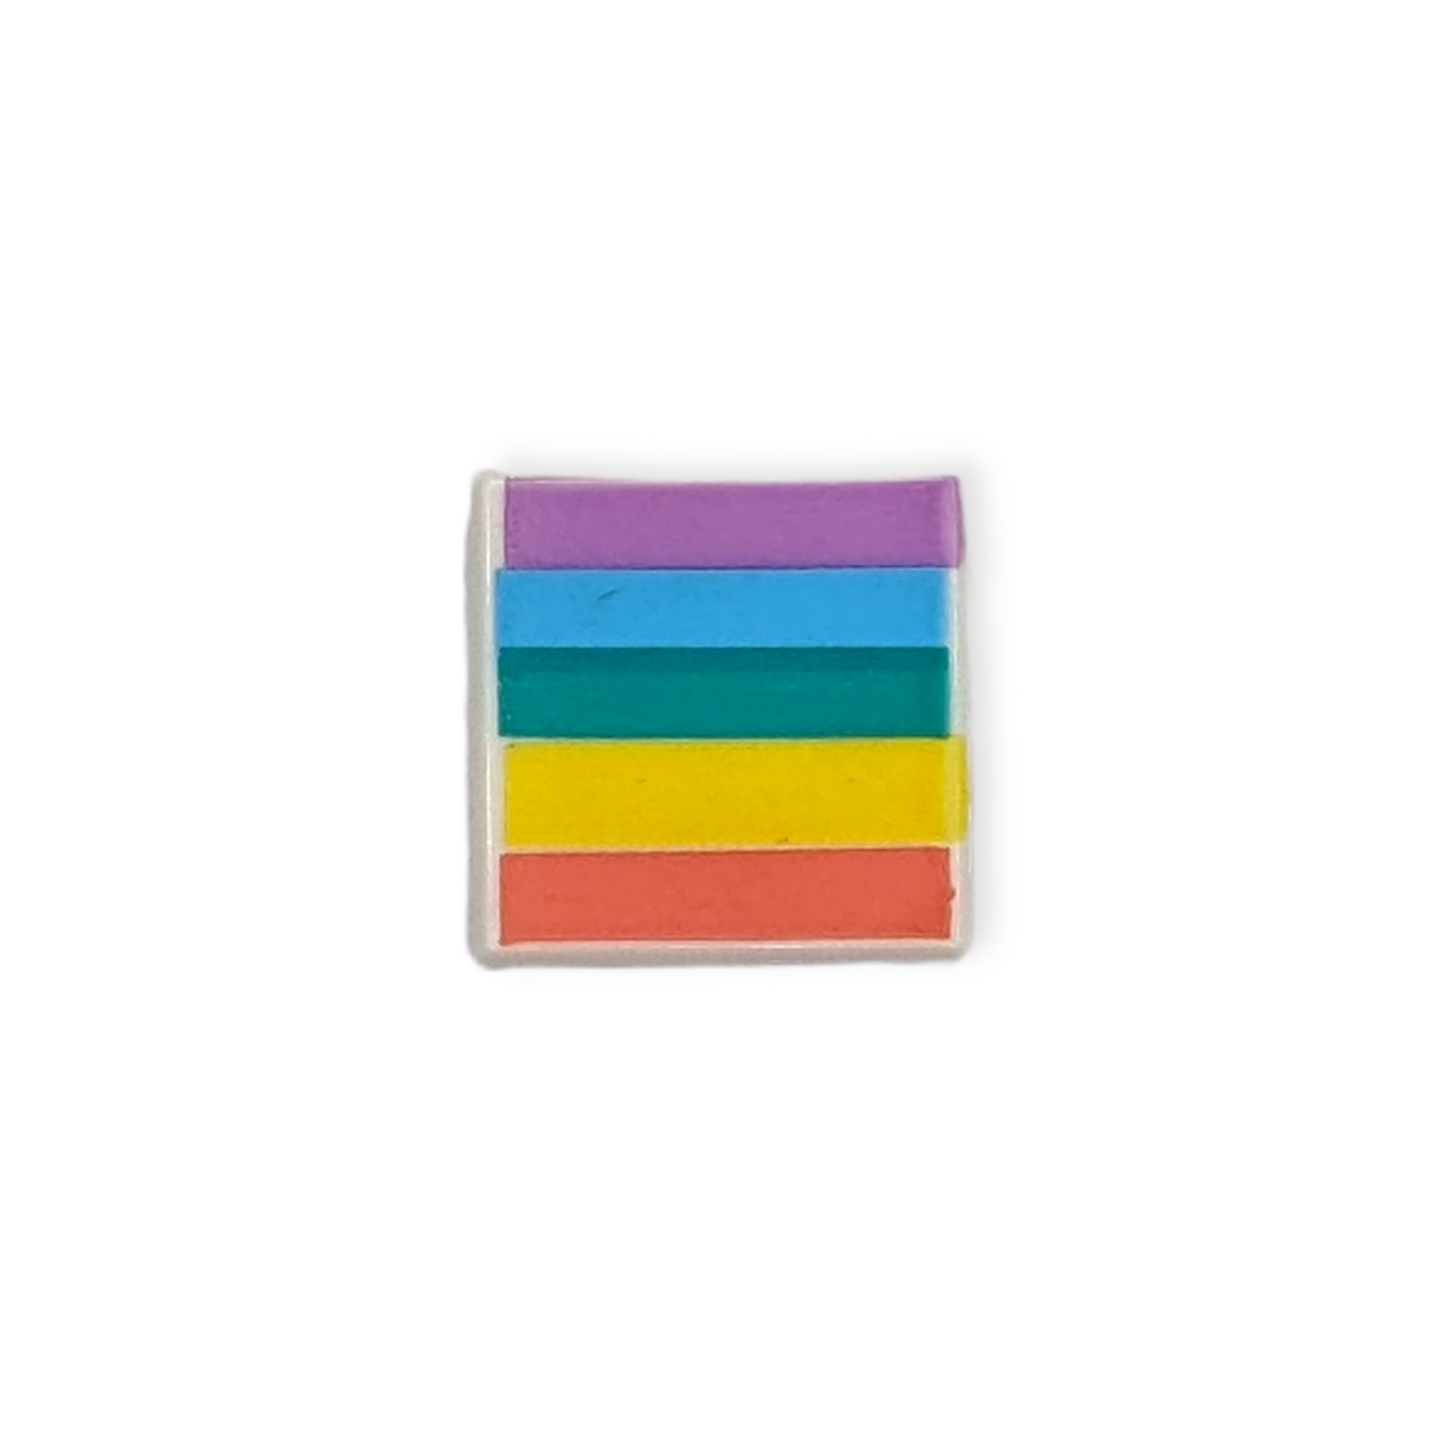 LEGO Tile 1x1 - Regenbogenfarben